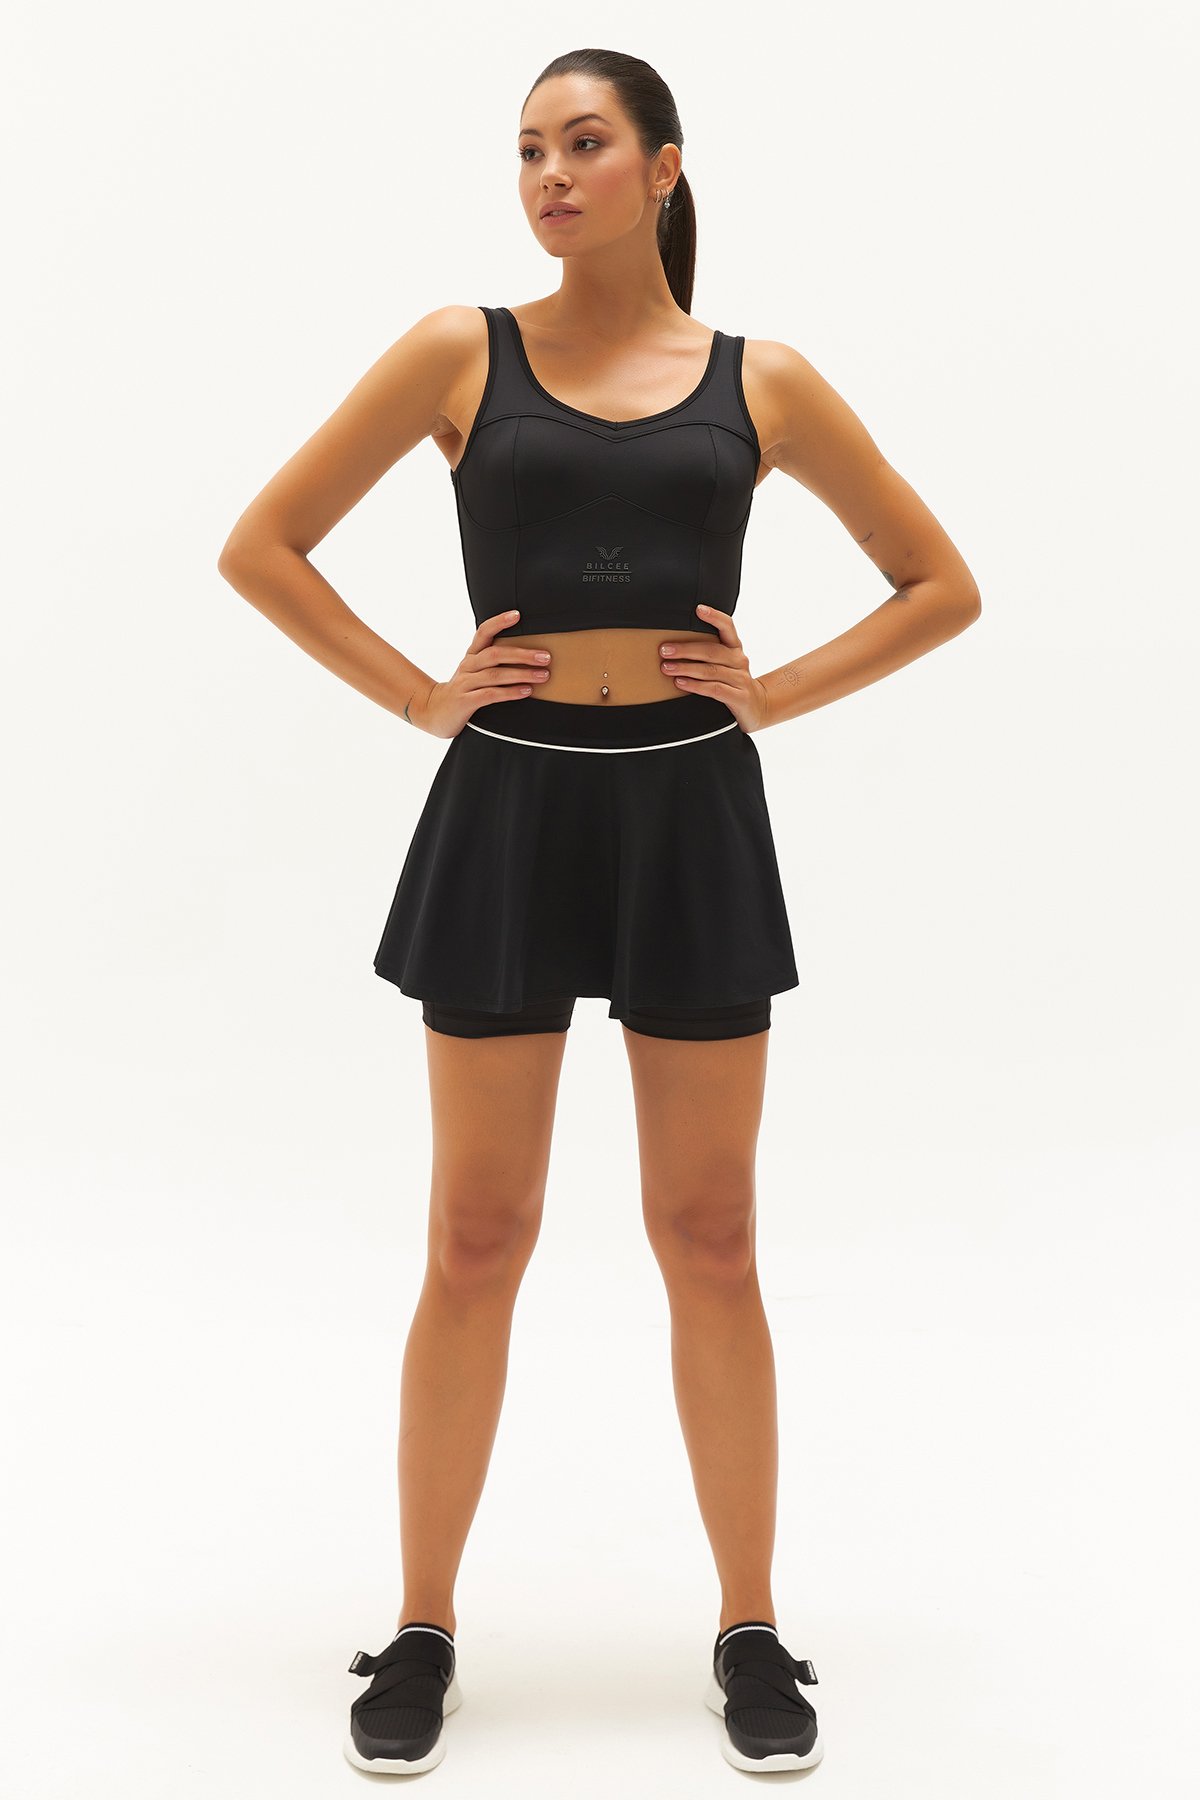 Kadın Siyah Fitness-Antrenman Spor Fashion Crop Top Toparlayıcı Bra Sporcu Sütyeni Büstiyer 0604 - 14